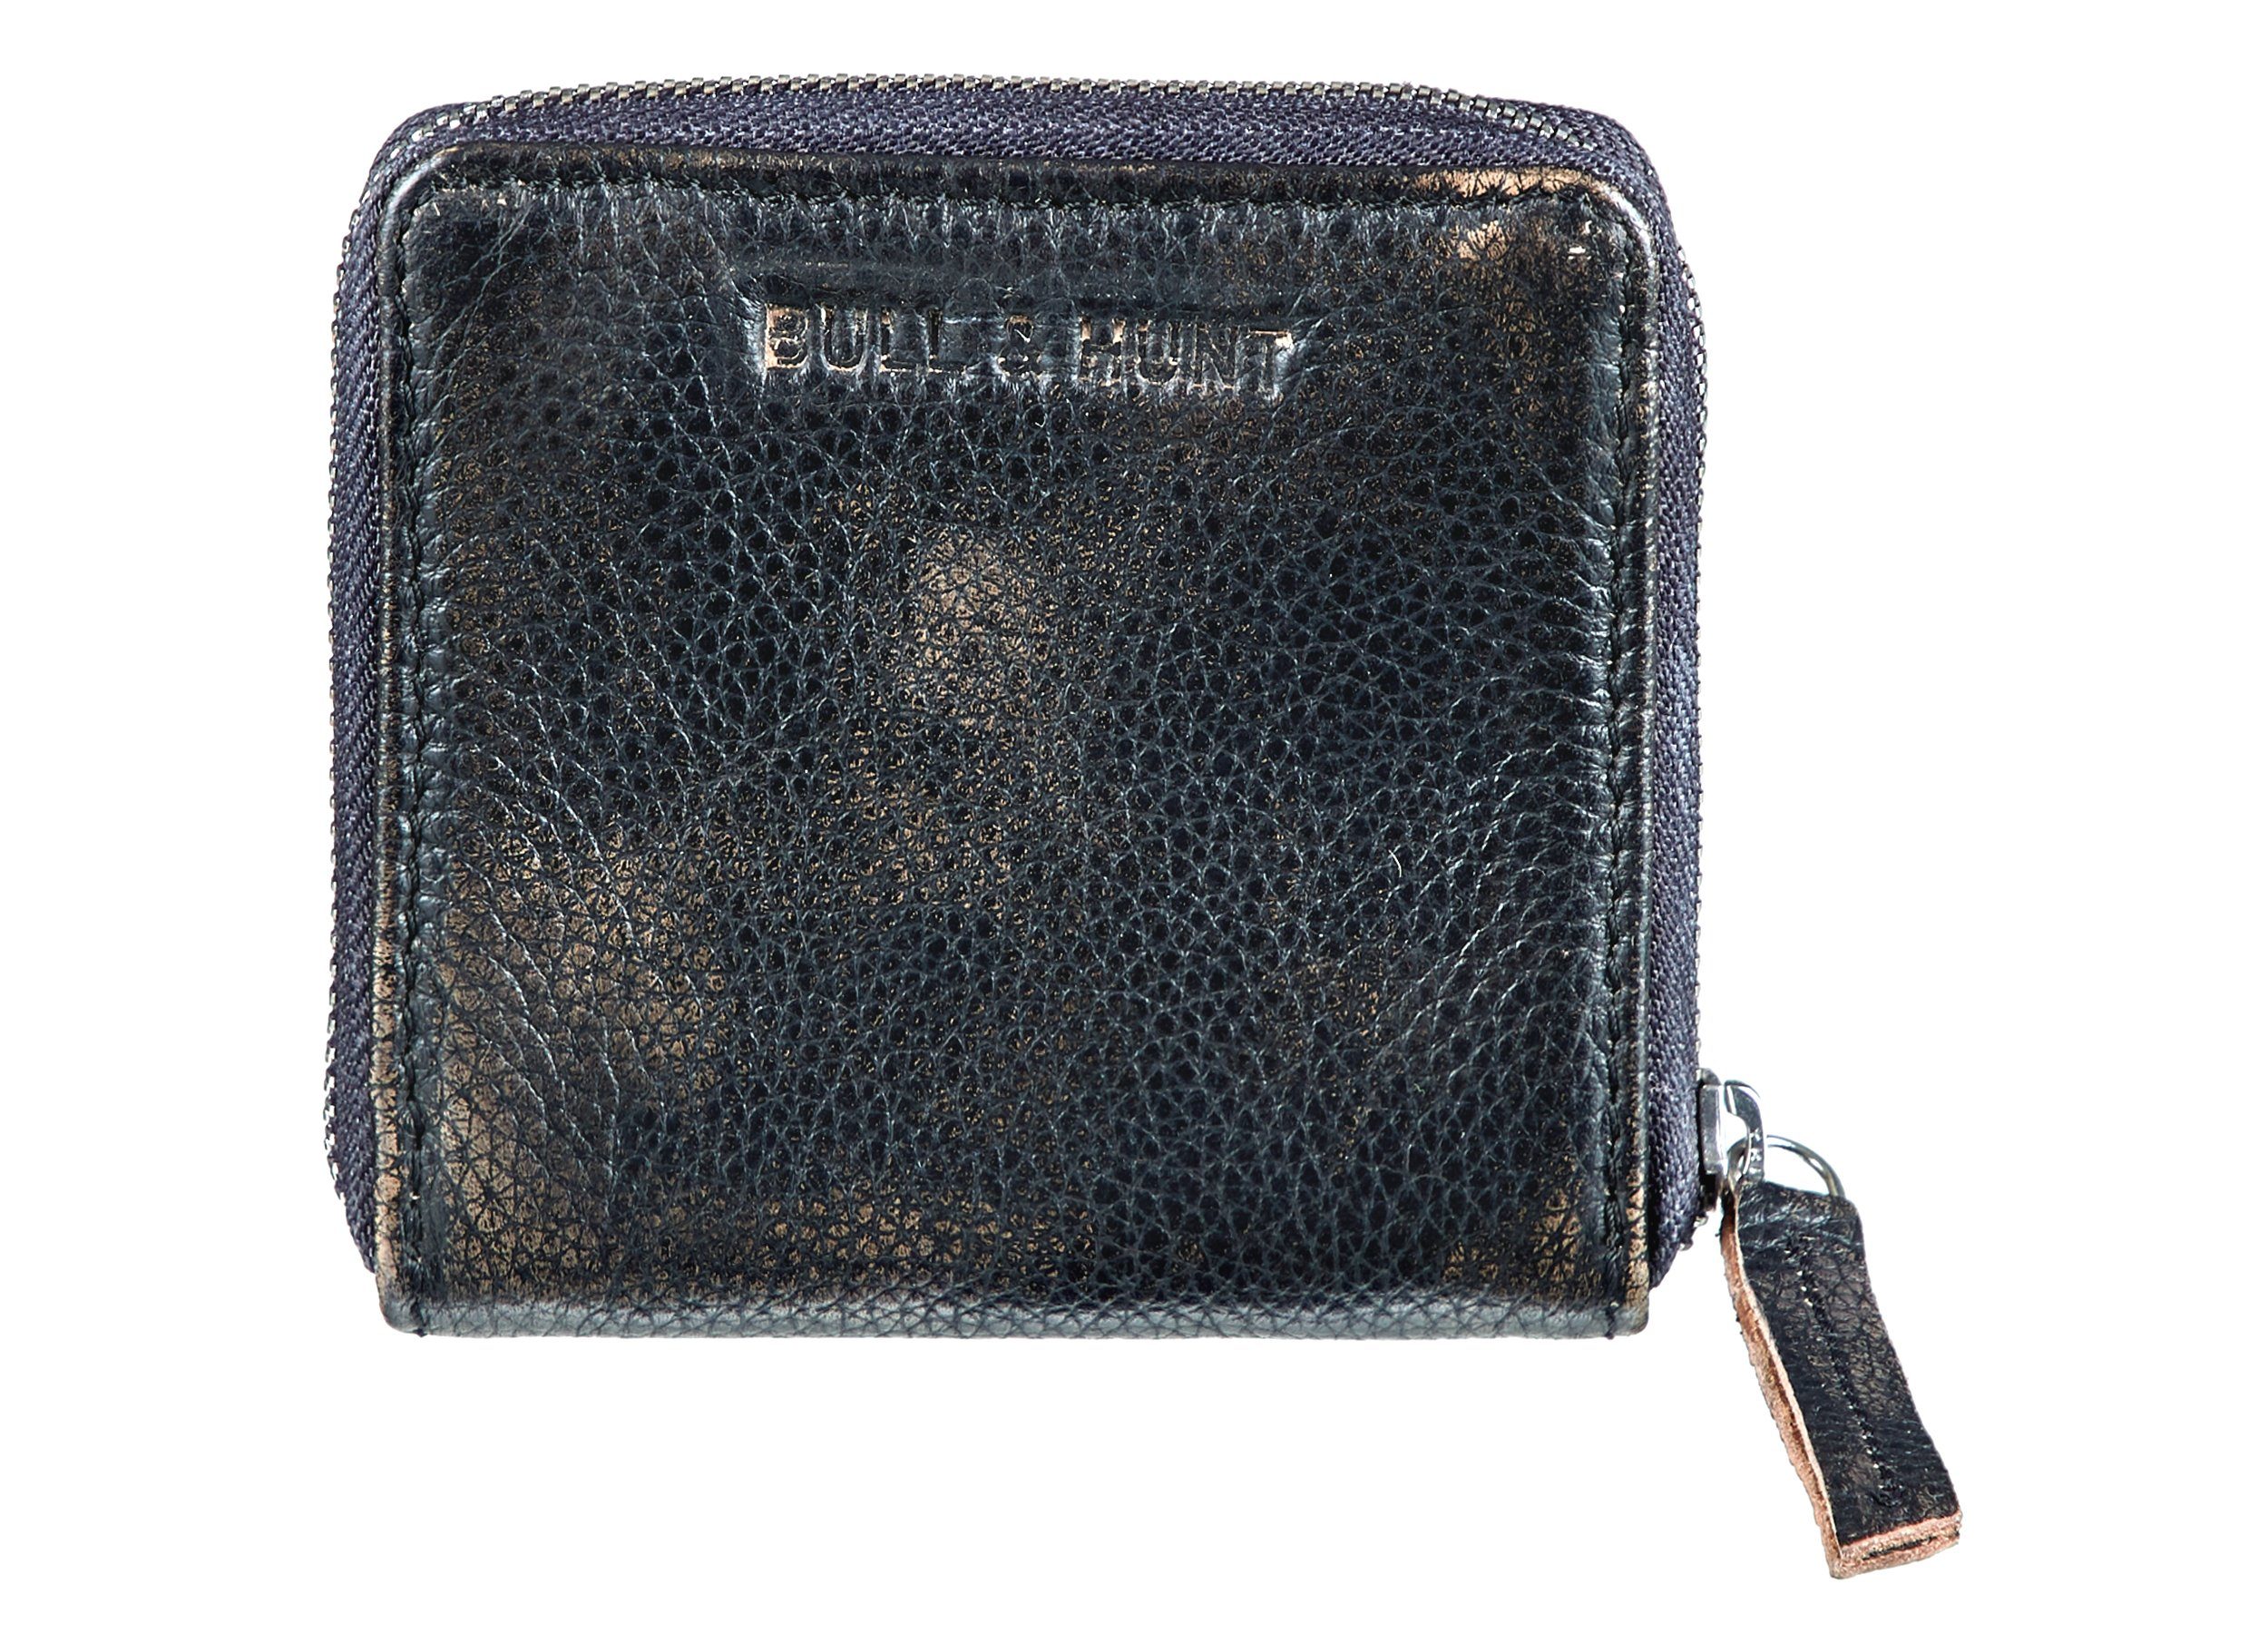 Bull & Hunt Mini Geldbörse mini zip wallet black